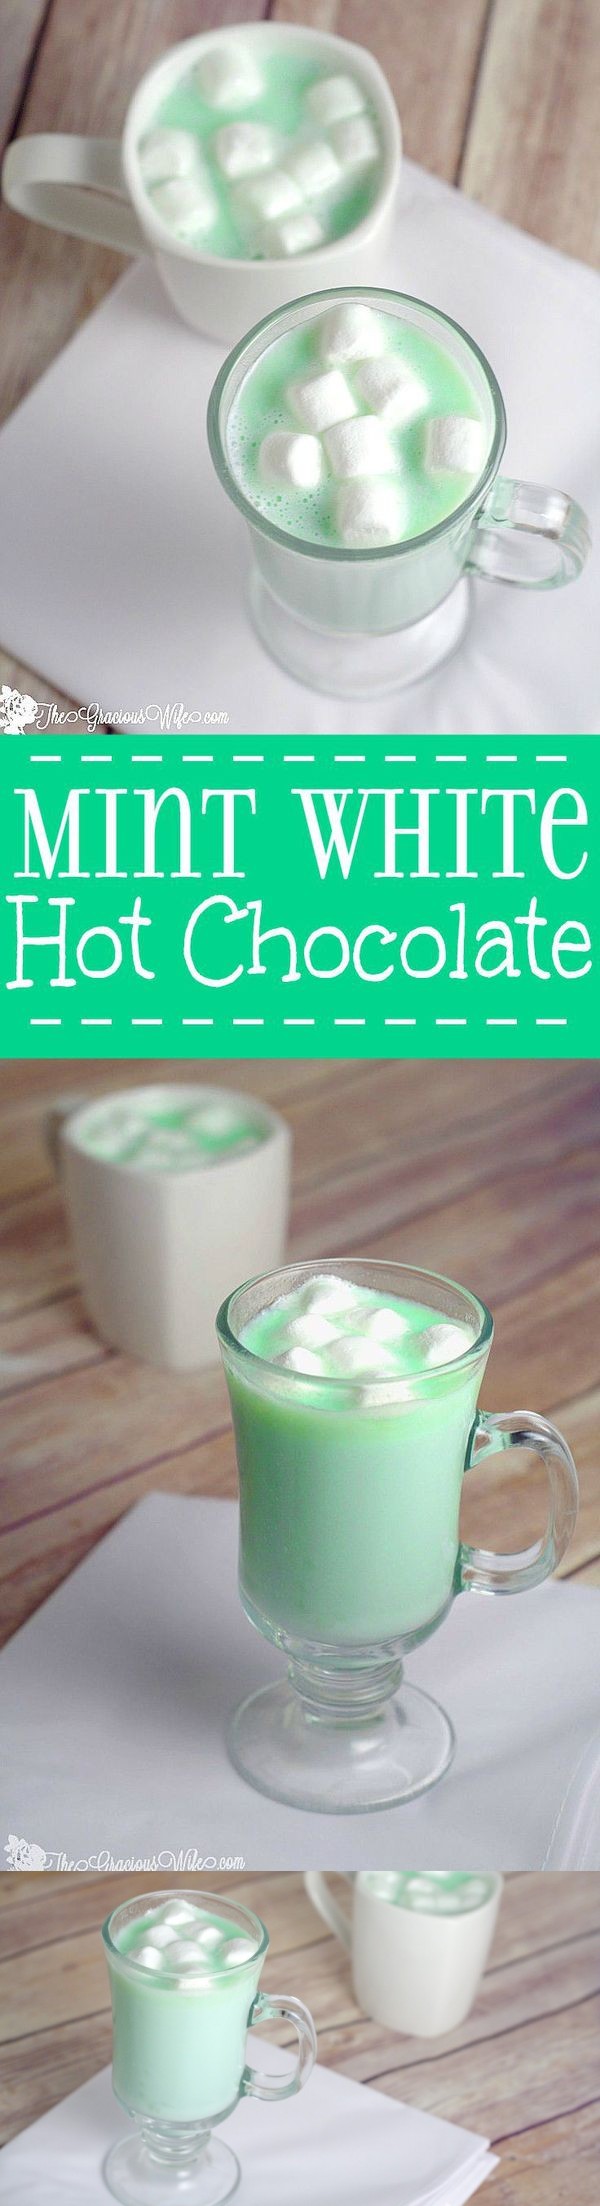 Homemade Mint White Hot Chocolate